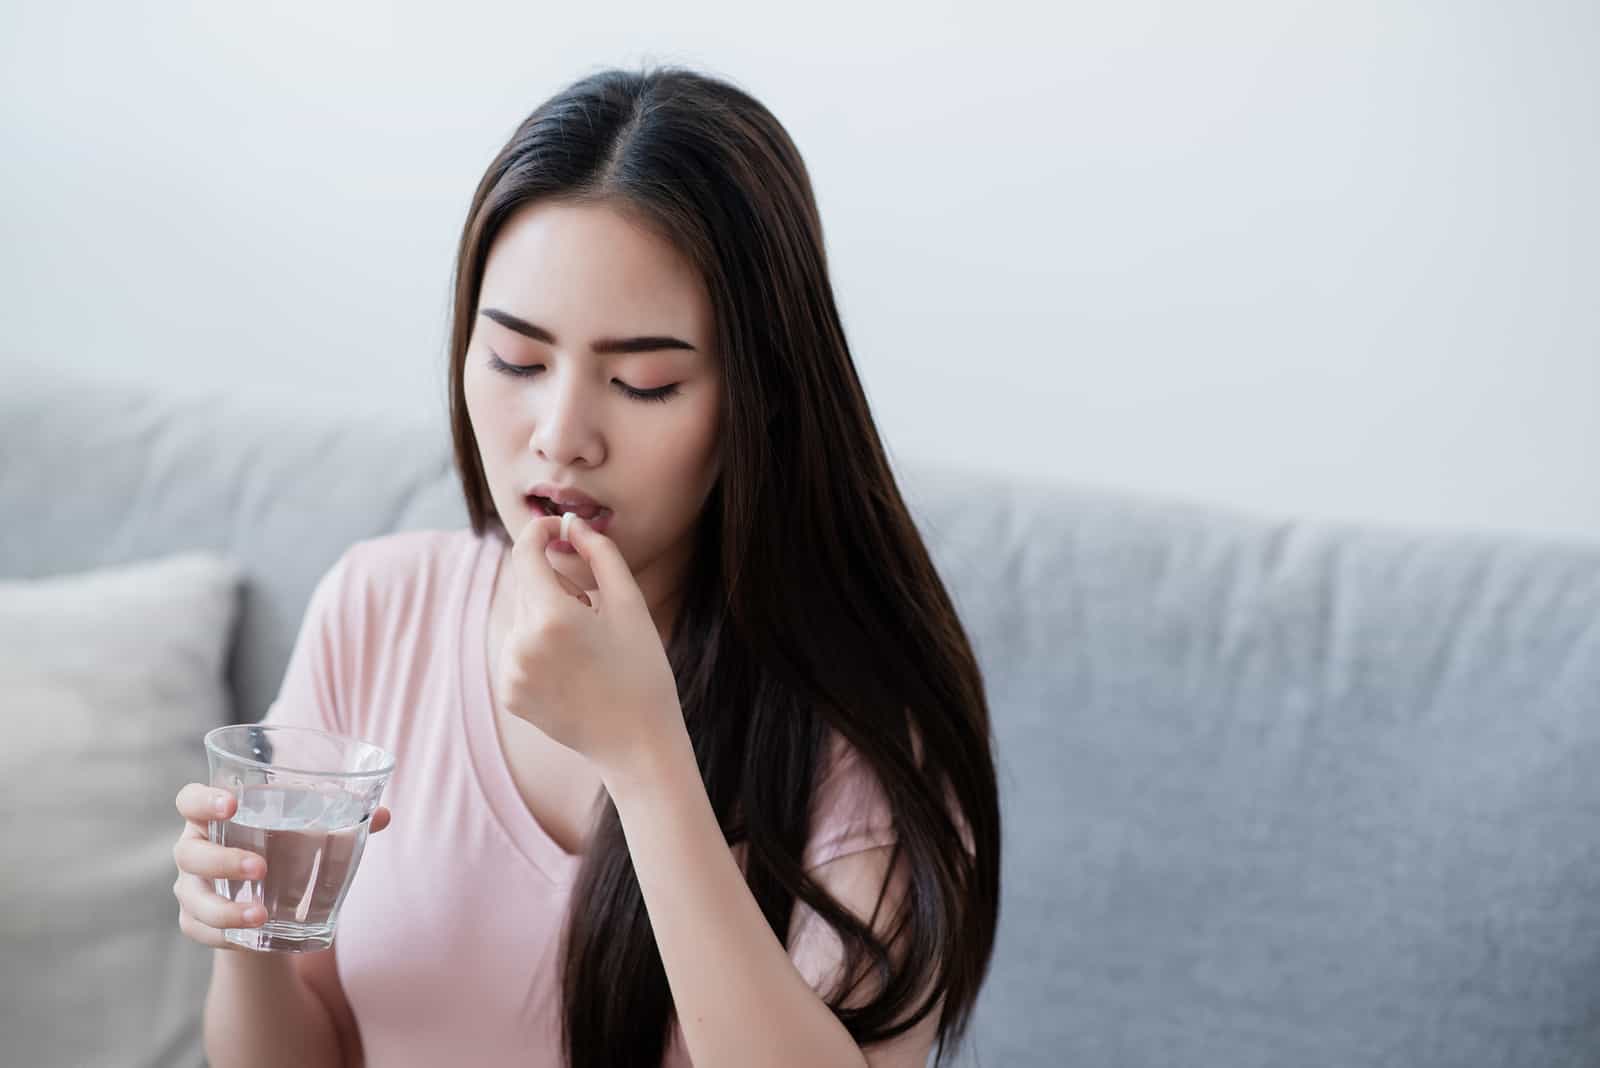 Kranke Frau trinkt Tabletten mit einem Glas Wasser in der Hand